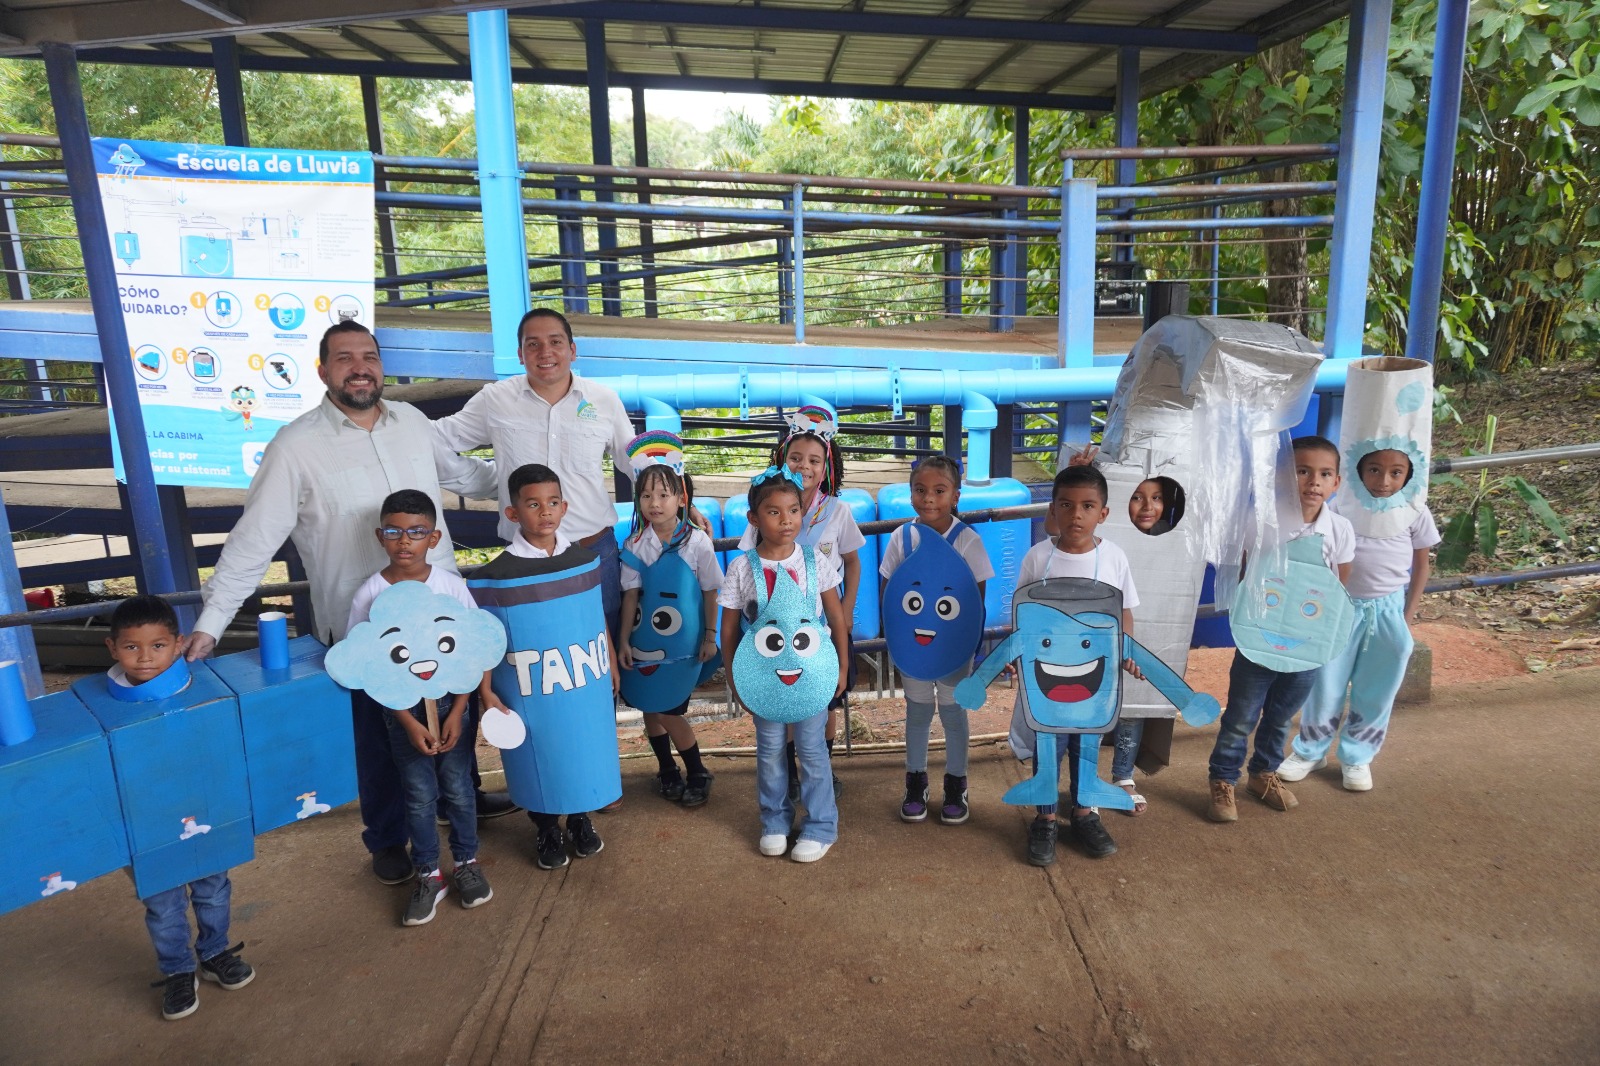 Panamá: Programa “Escuela de Lluvia” brinda acceso de agua potable a más de 2000 personas en La Cabima